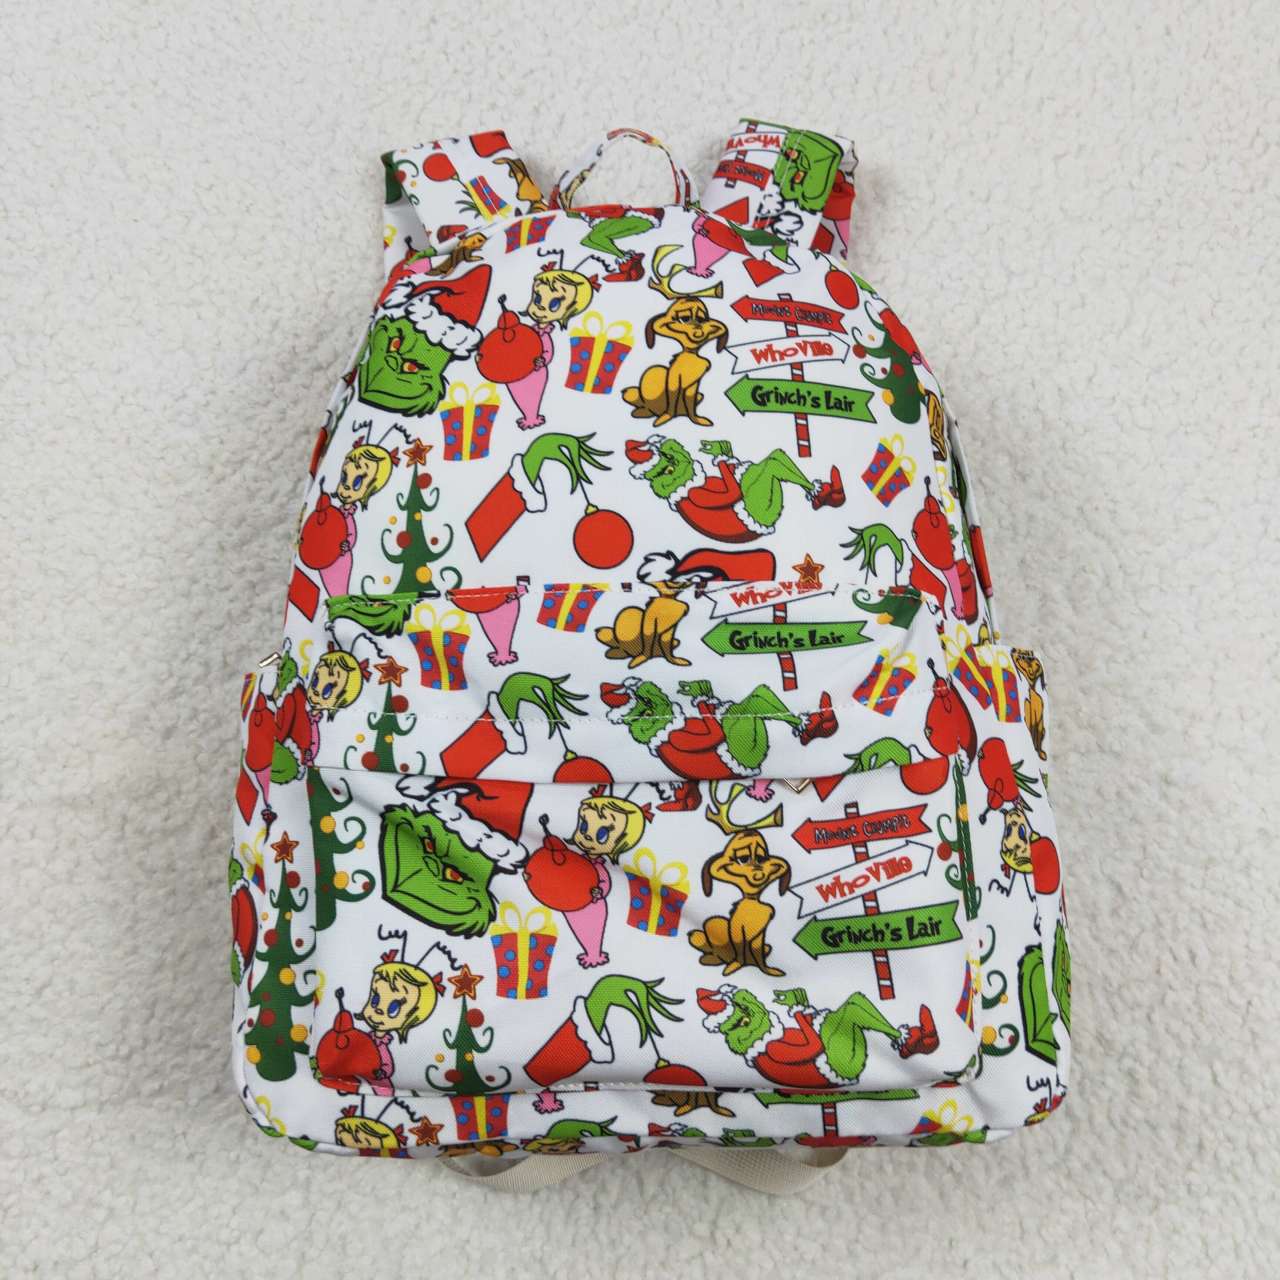 BA0138 Kids bag Christmas green frog print backpack